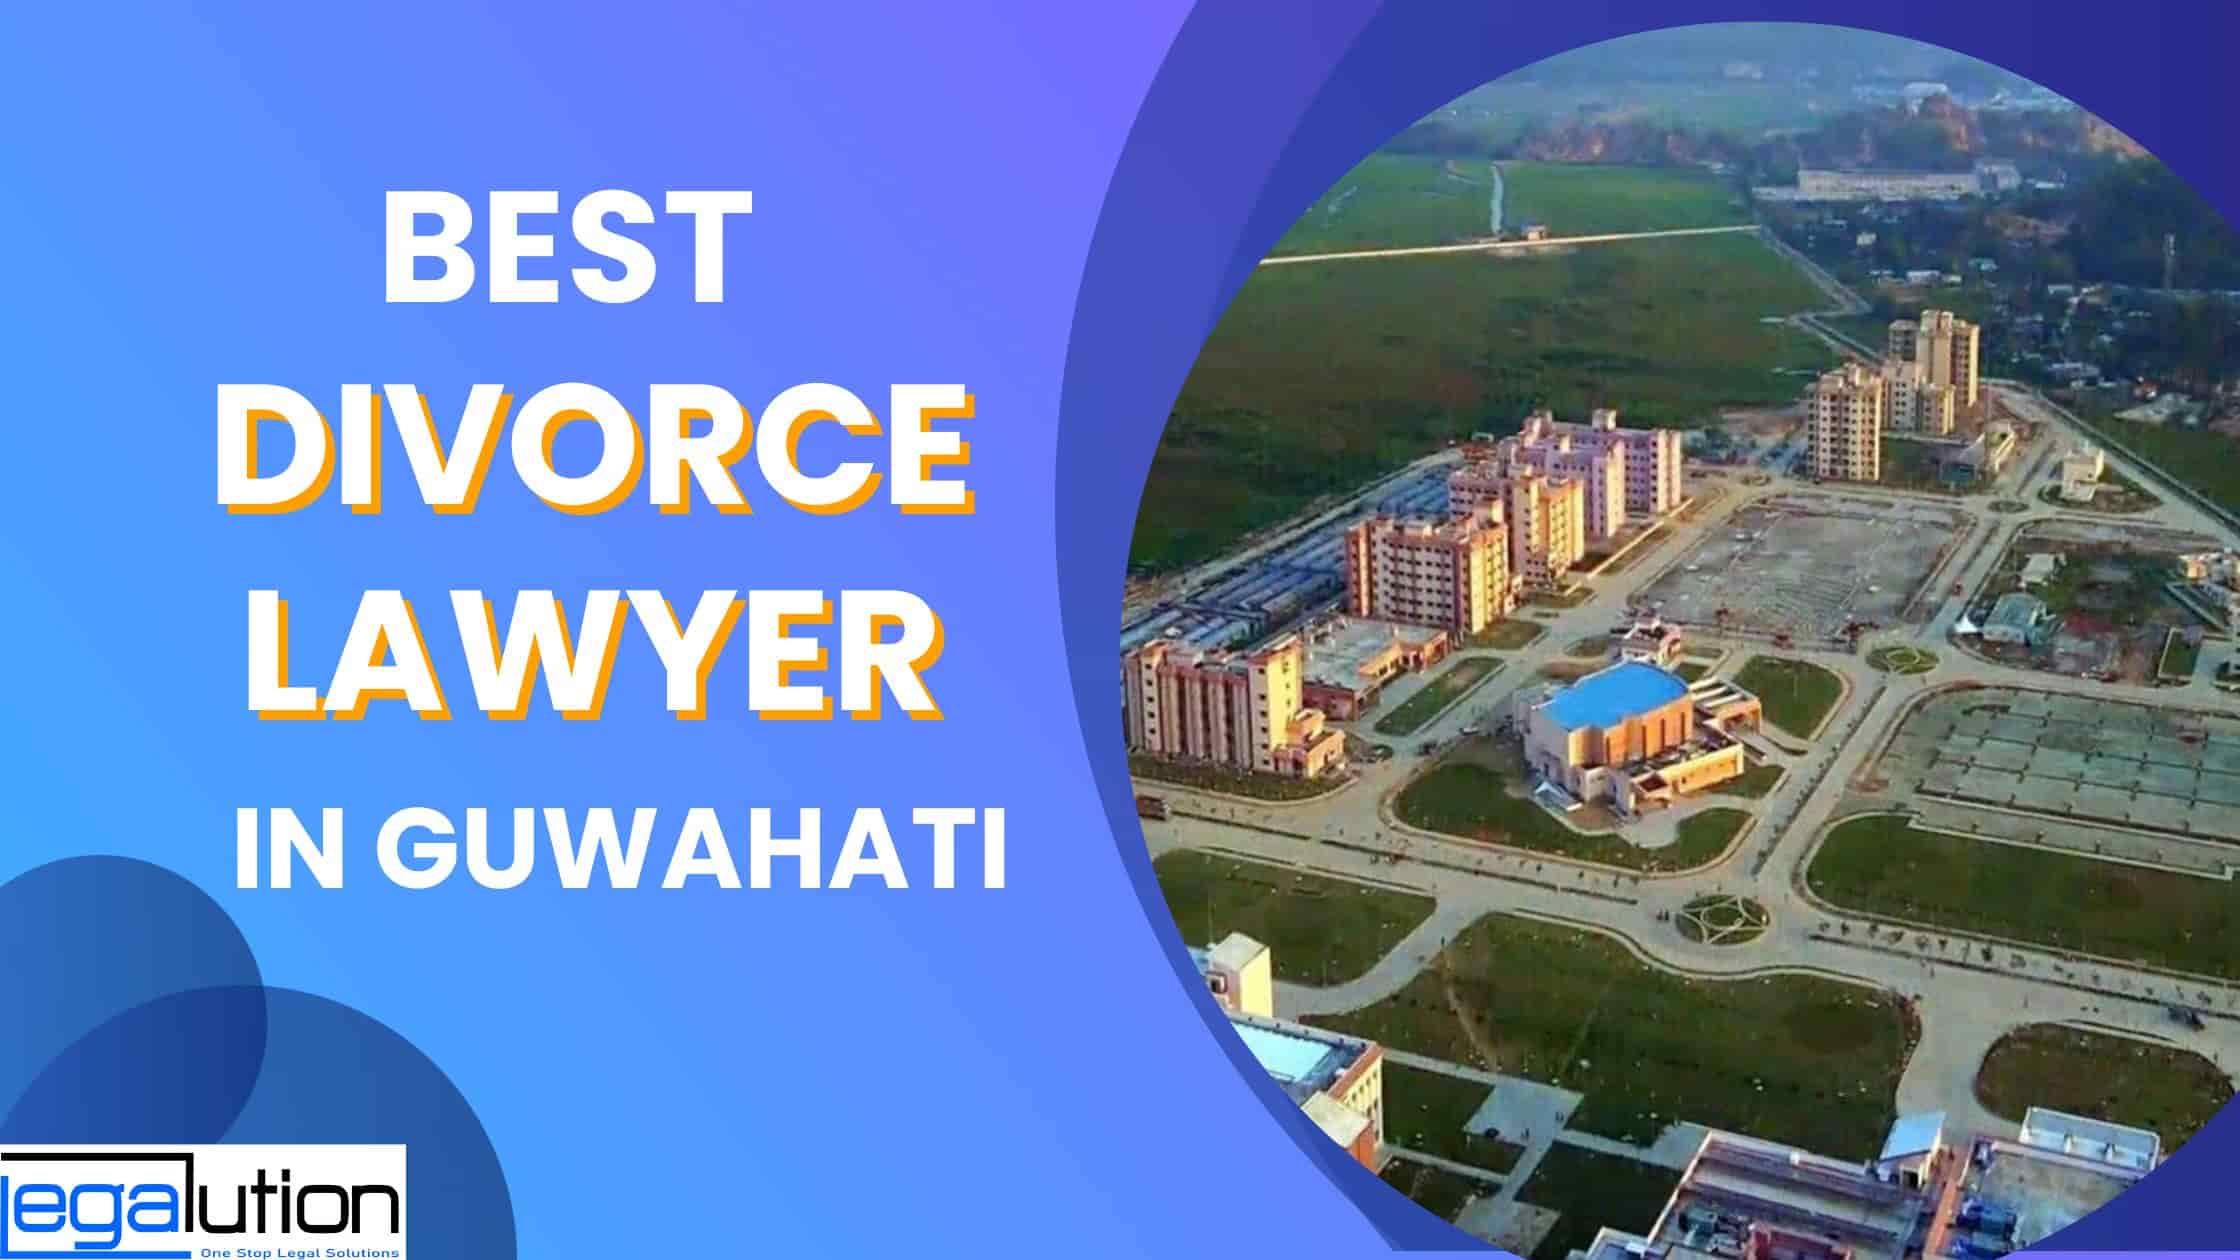 Best Divorce Lawyer in Guwahati